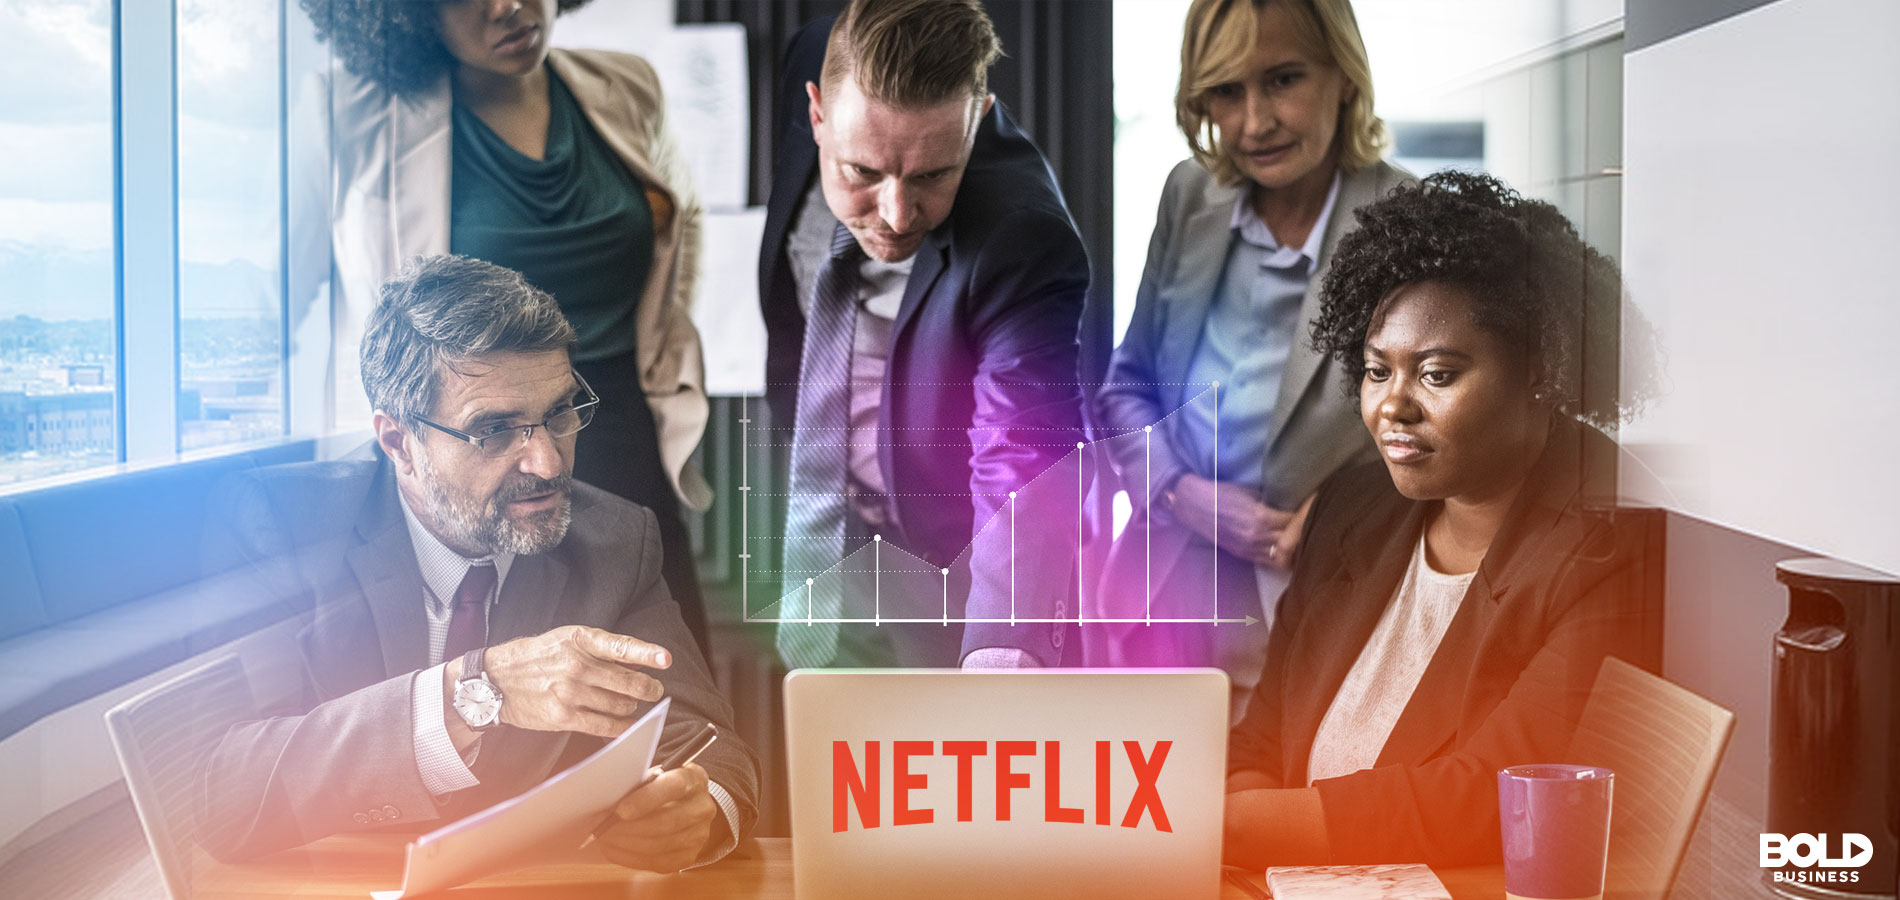 Netflix Management Team Bold Leadership Style Explained